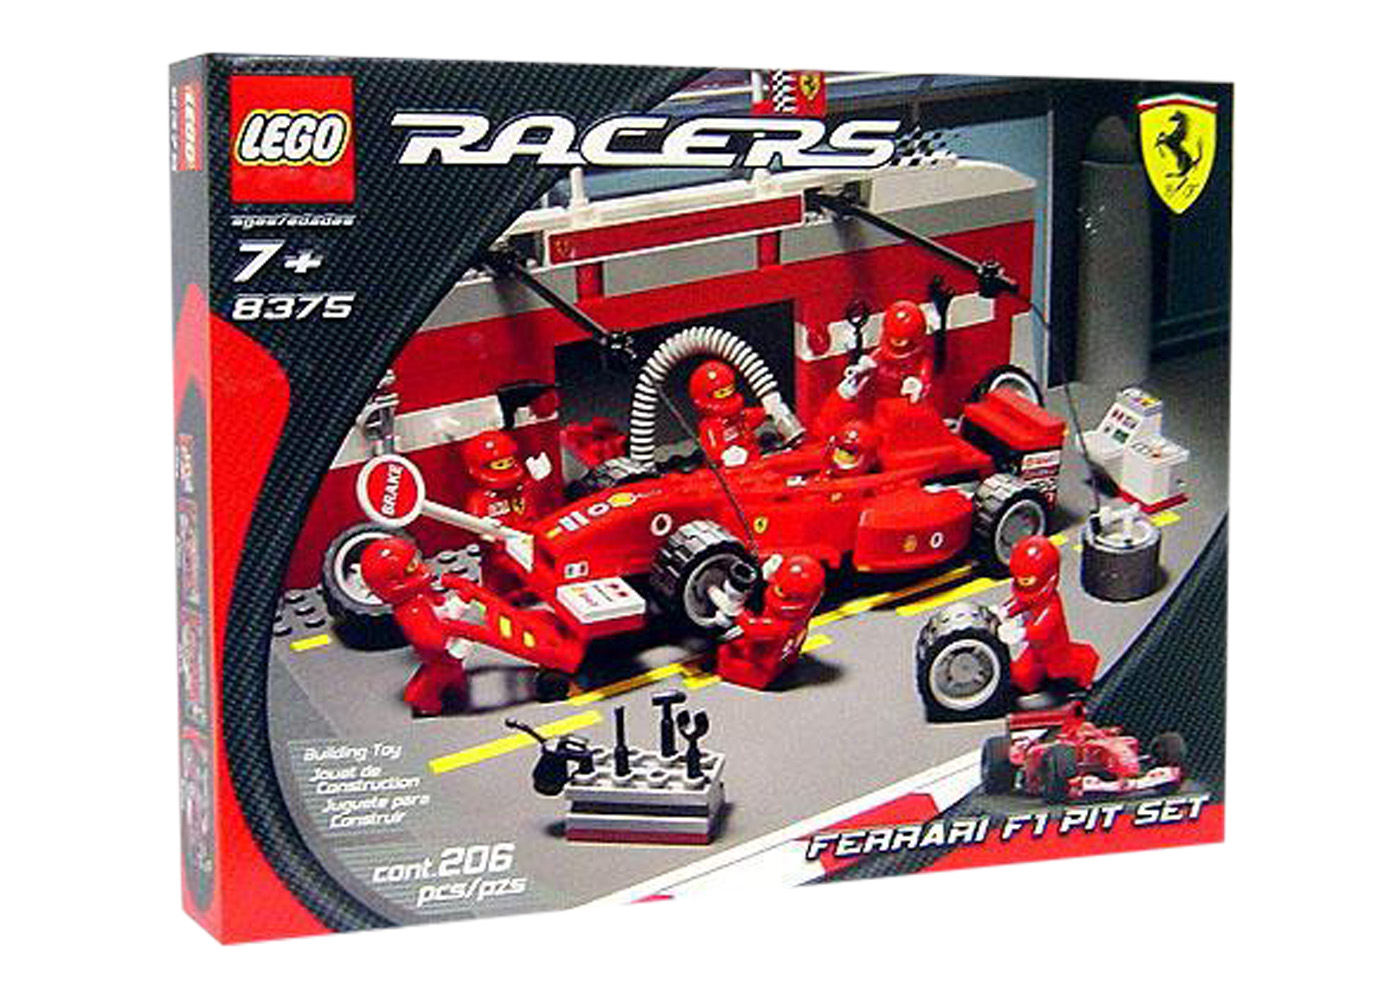 LEGO Racers Ferrari F1 Pit Set 8375 - JP